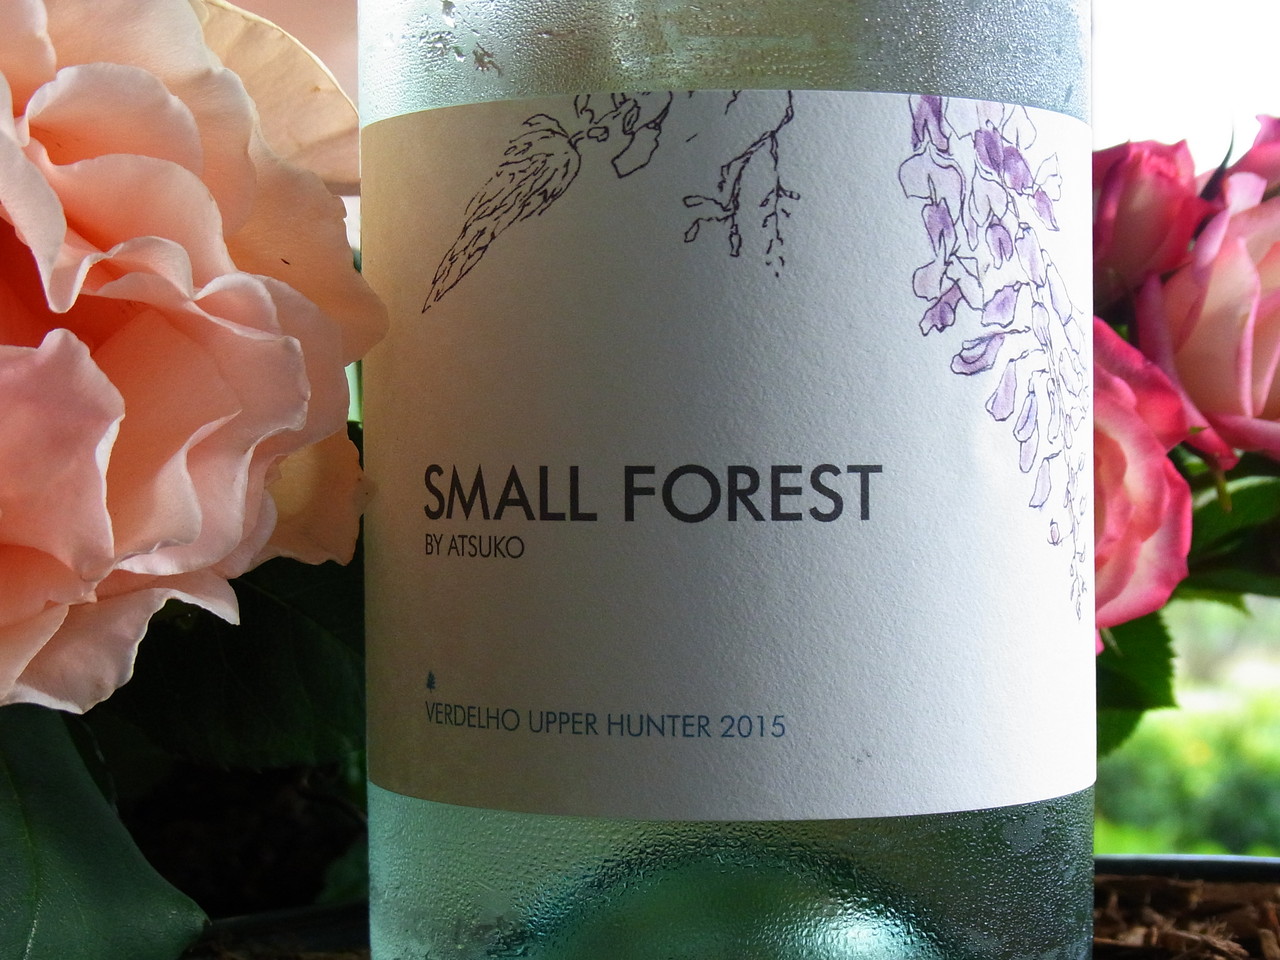 Small Forest Verdelho Upper Hunter オーストラリア ニュージーランド ワイン タスマニアマスタード ヴァイアンドカンパニー